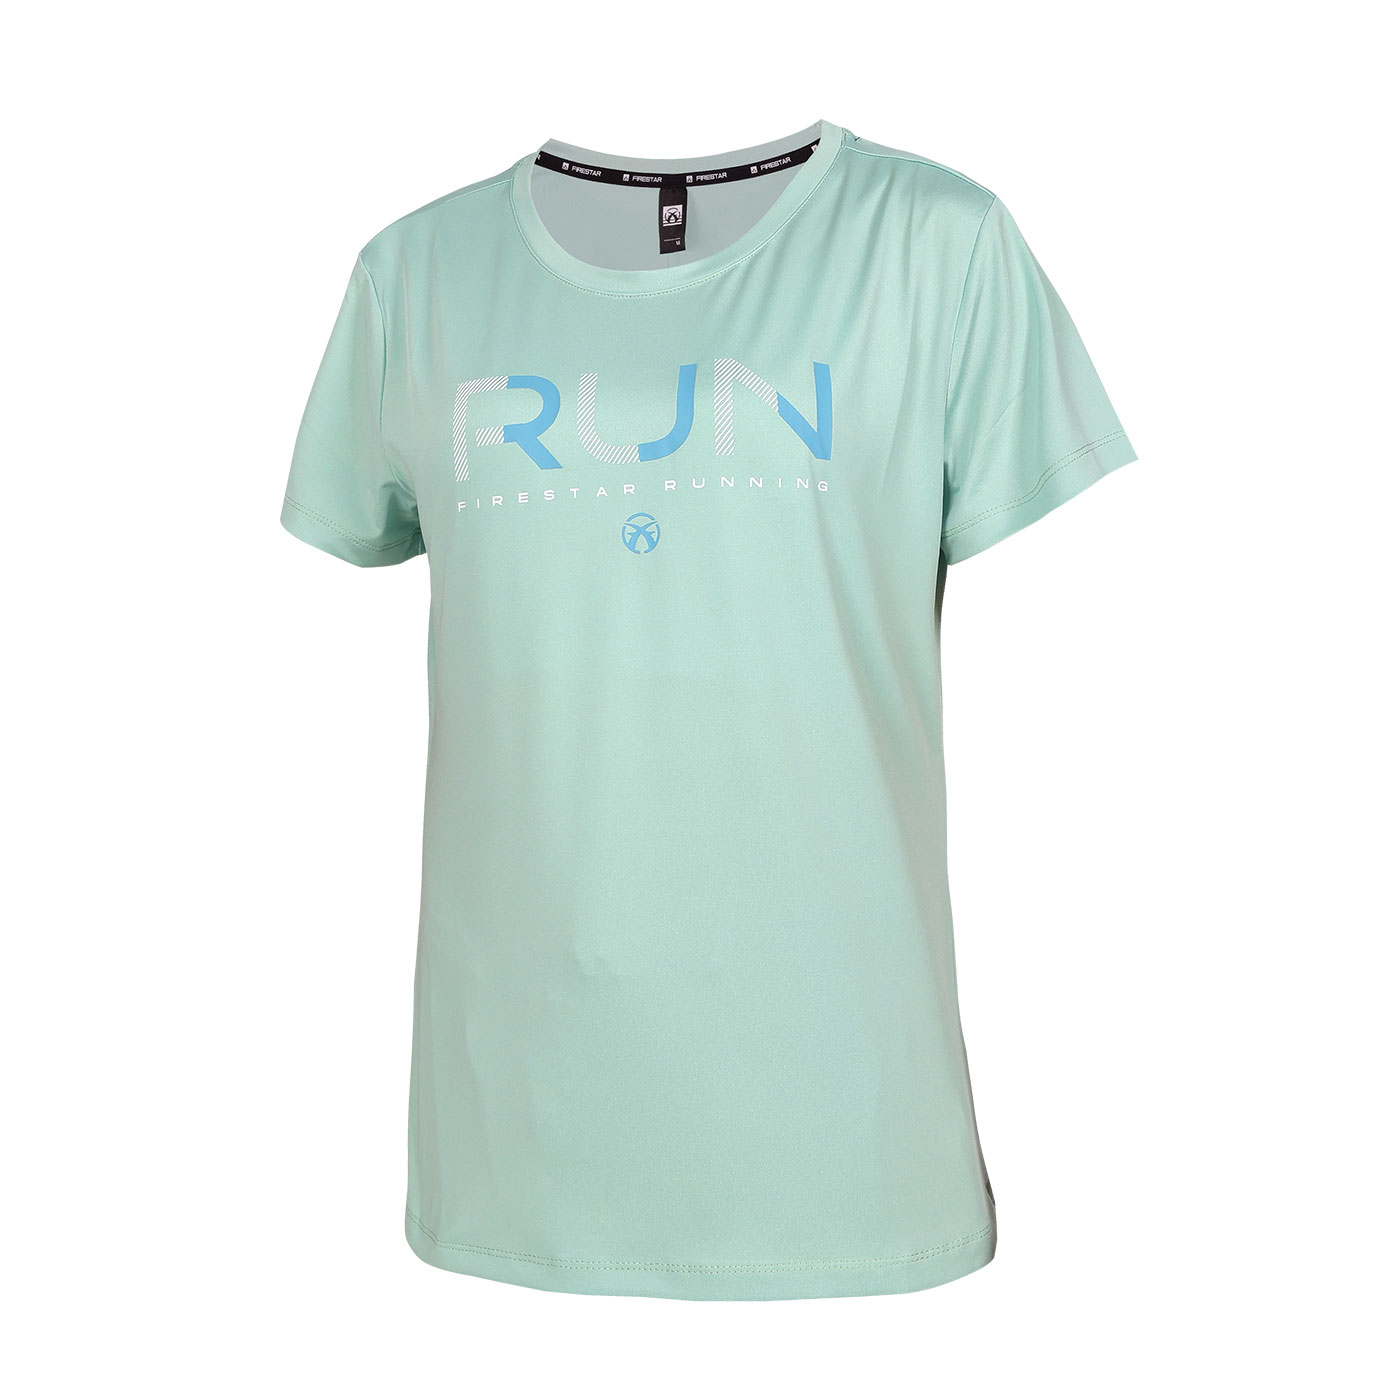 FIRESTAR 女款彈性印花短袖T恤   DL463-66 - 果綠湖藍白